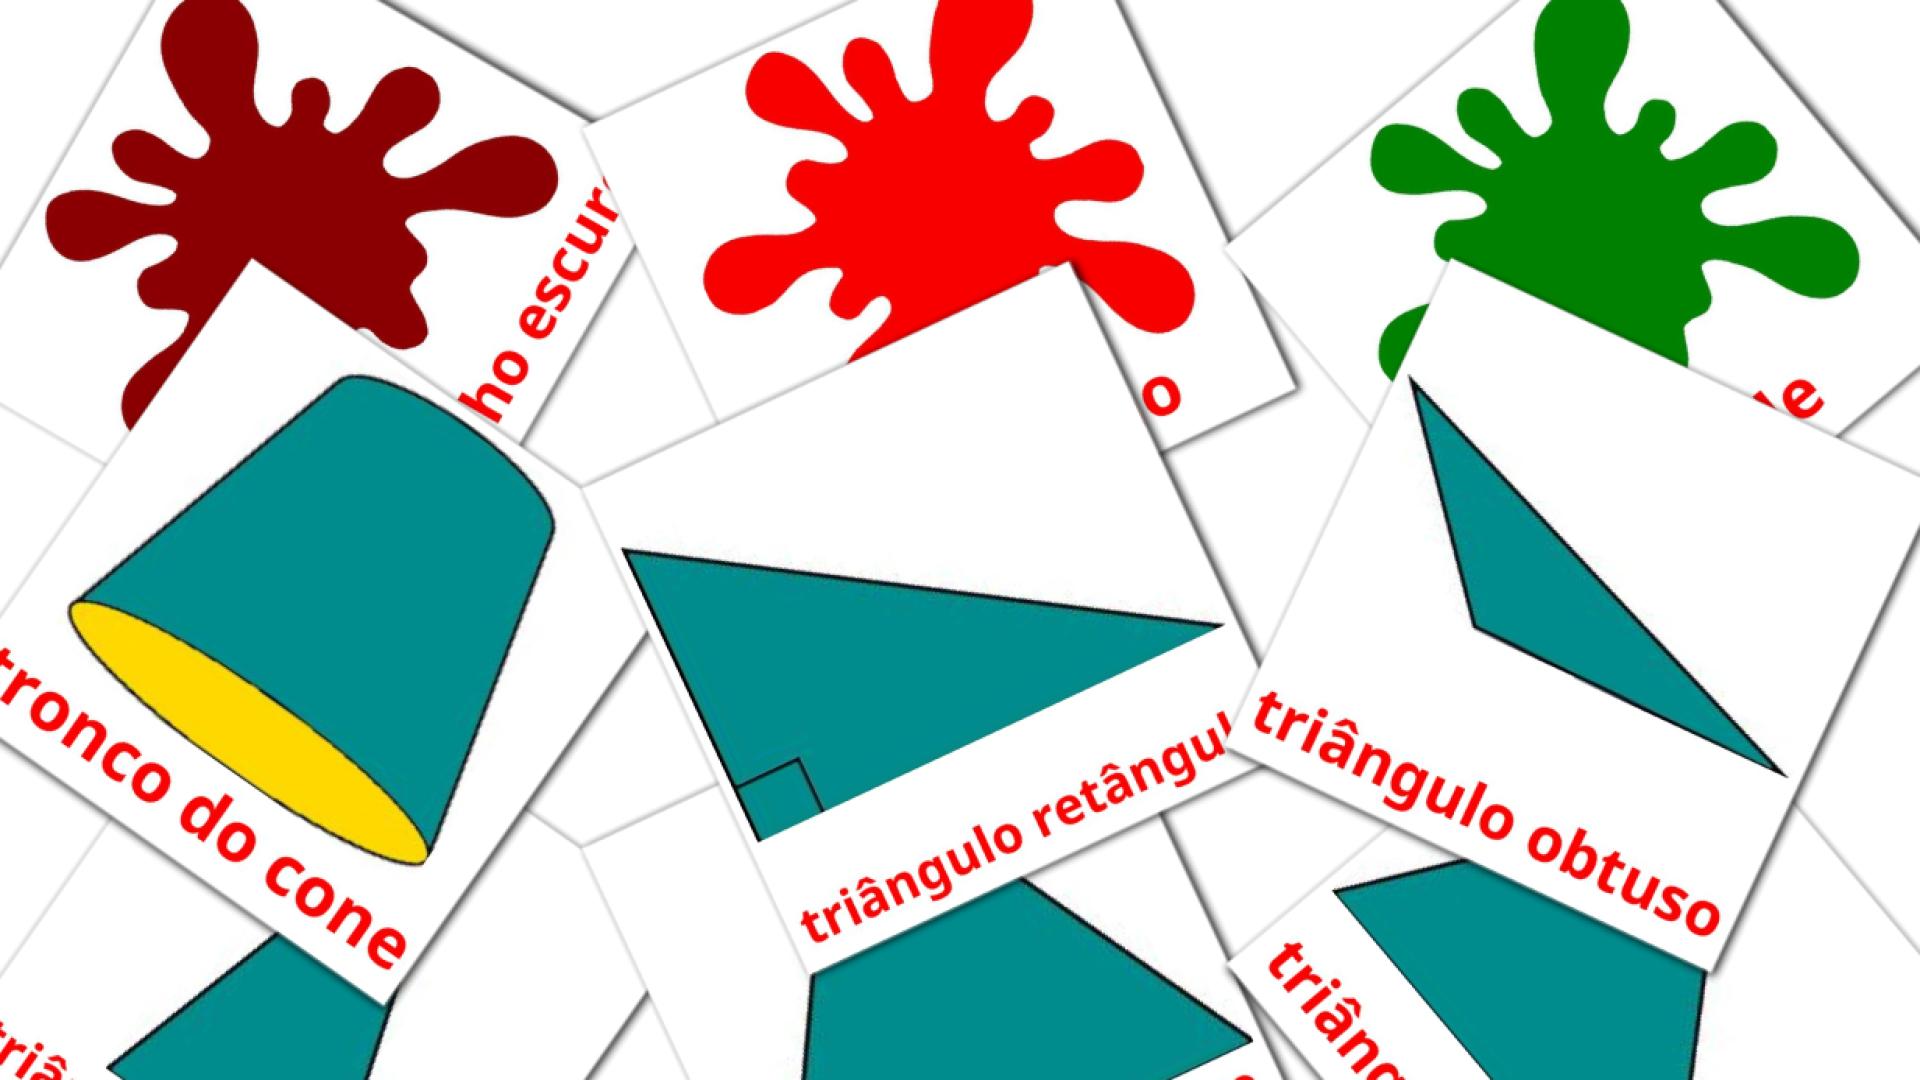 Cores e formas Flashcards di vocabolario portoghese